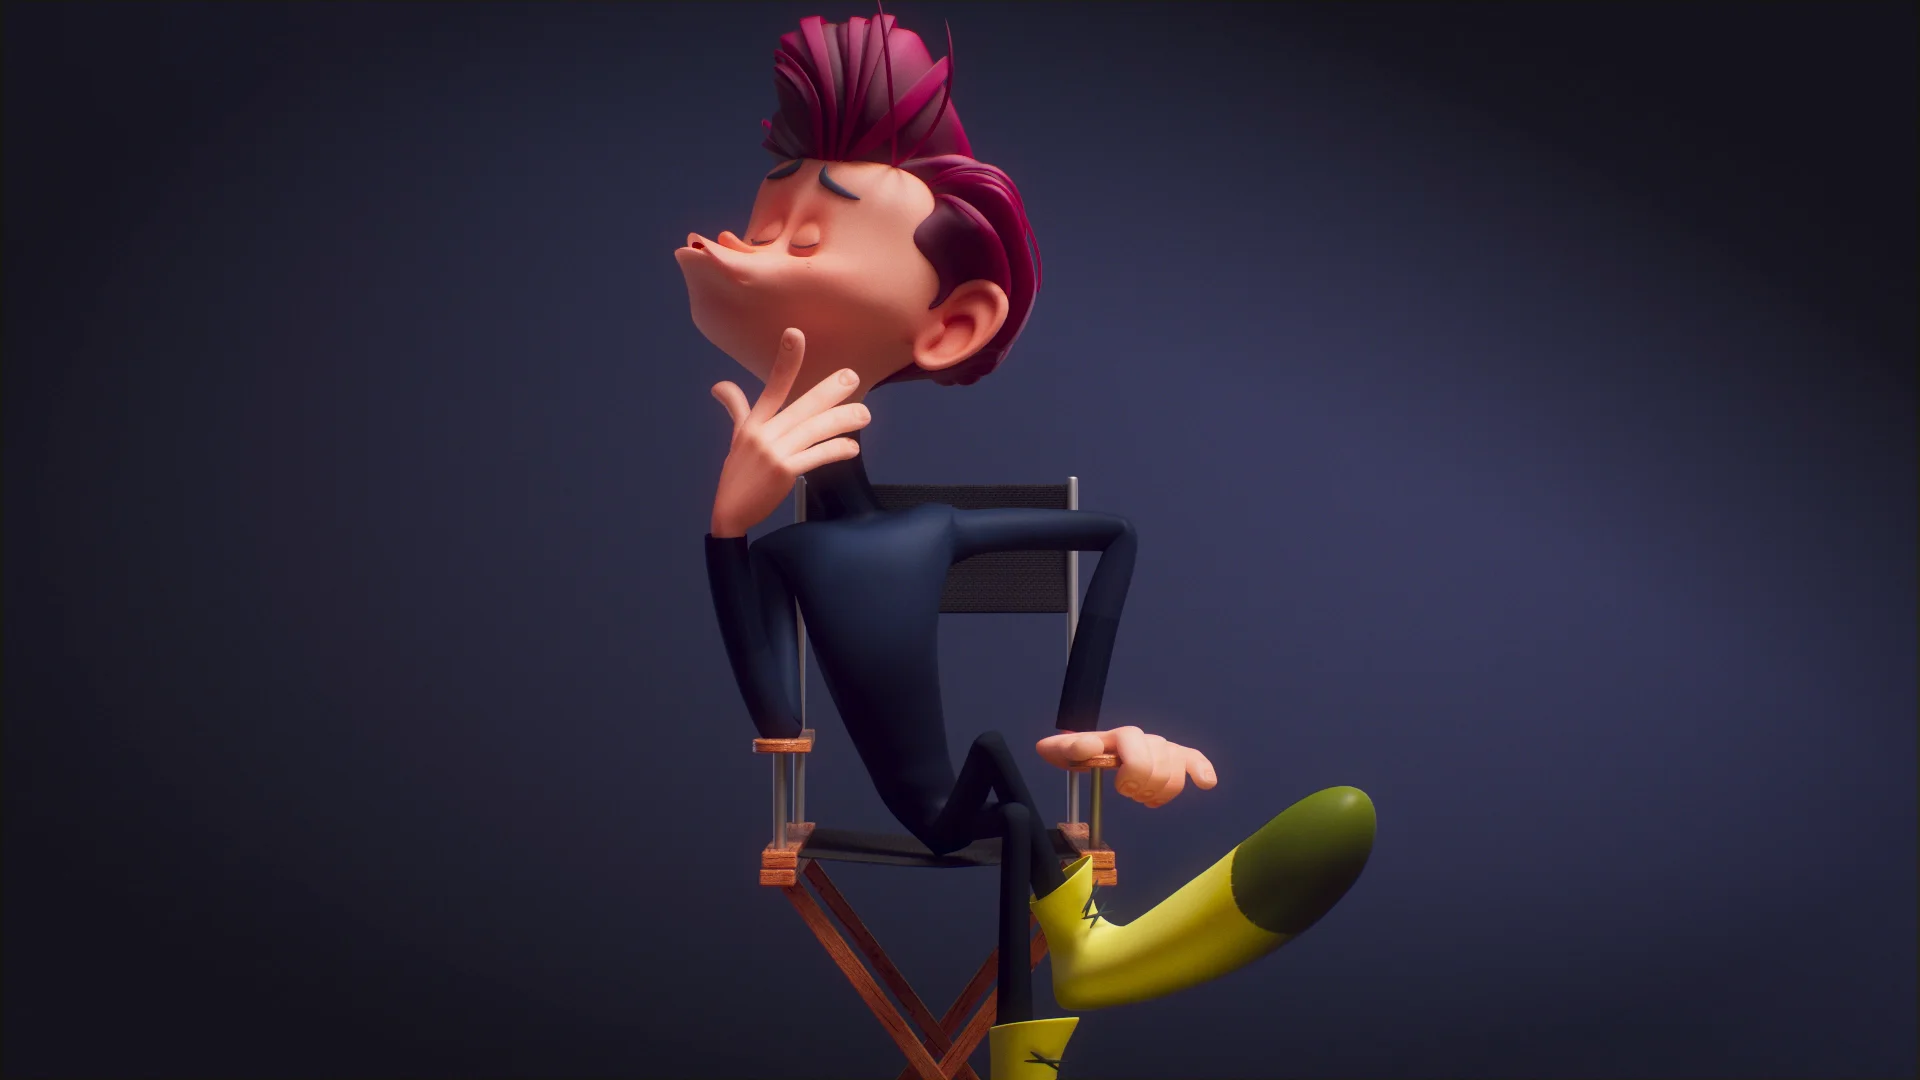 Jorge Vigara - Animation Demo Reel 2021 on Vimeo